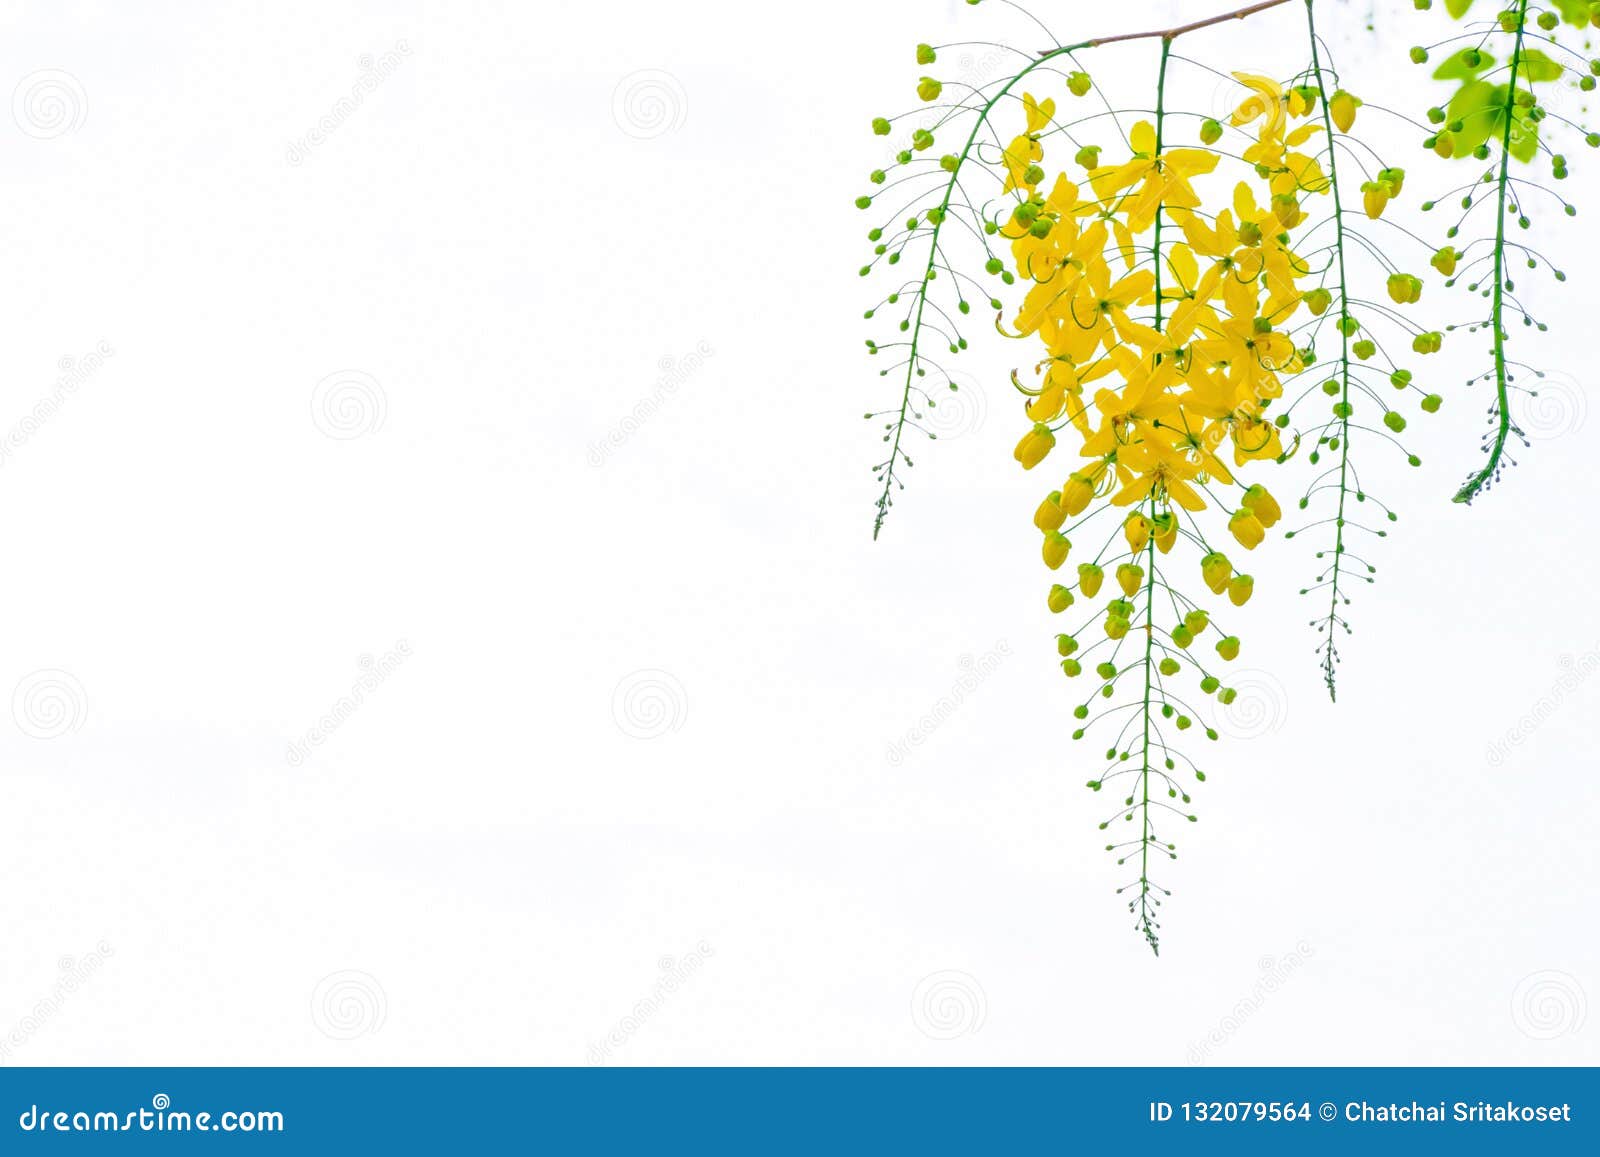 golden shower flowers , cassia fistulosa tree flowers , summer f